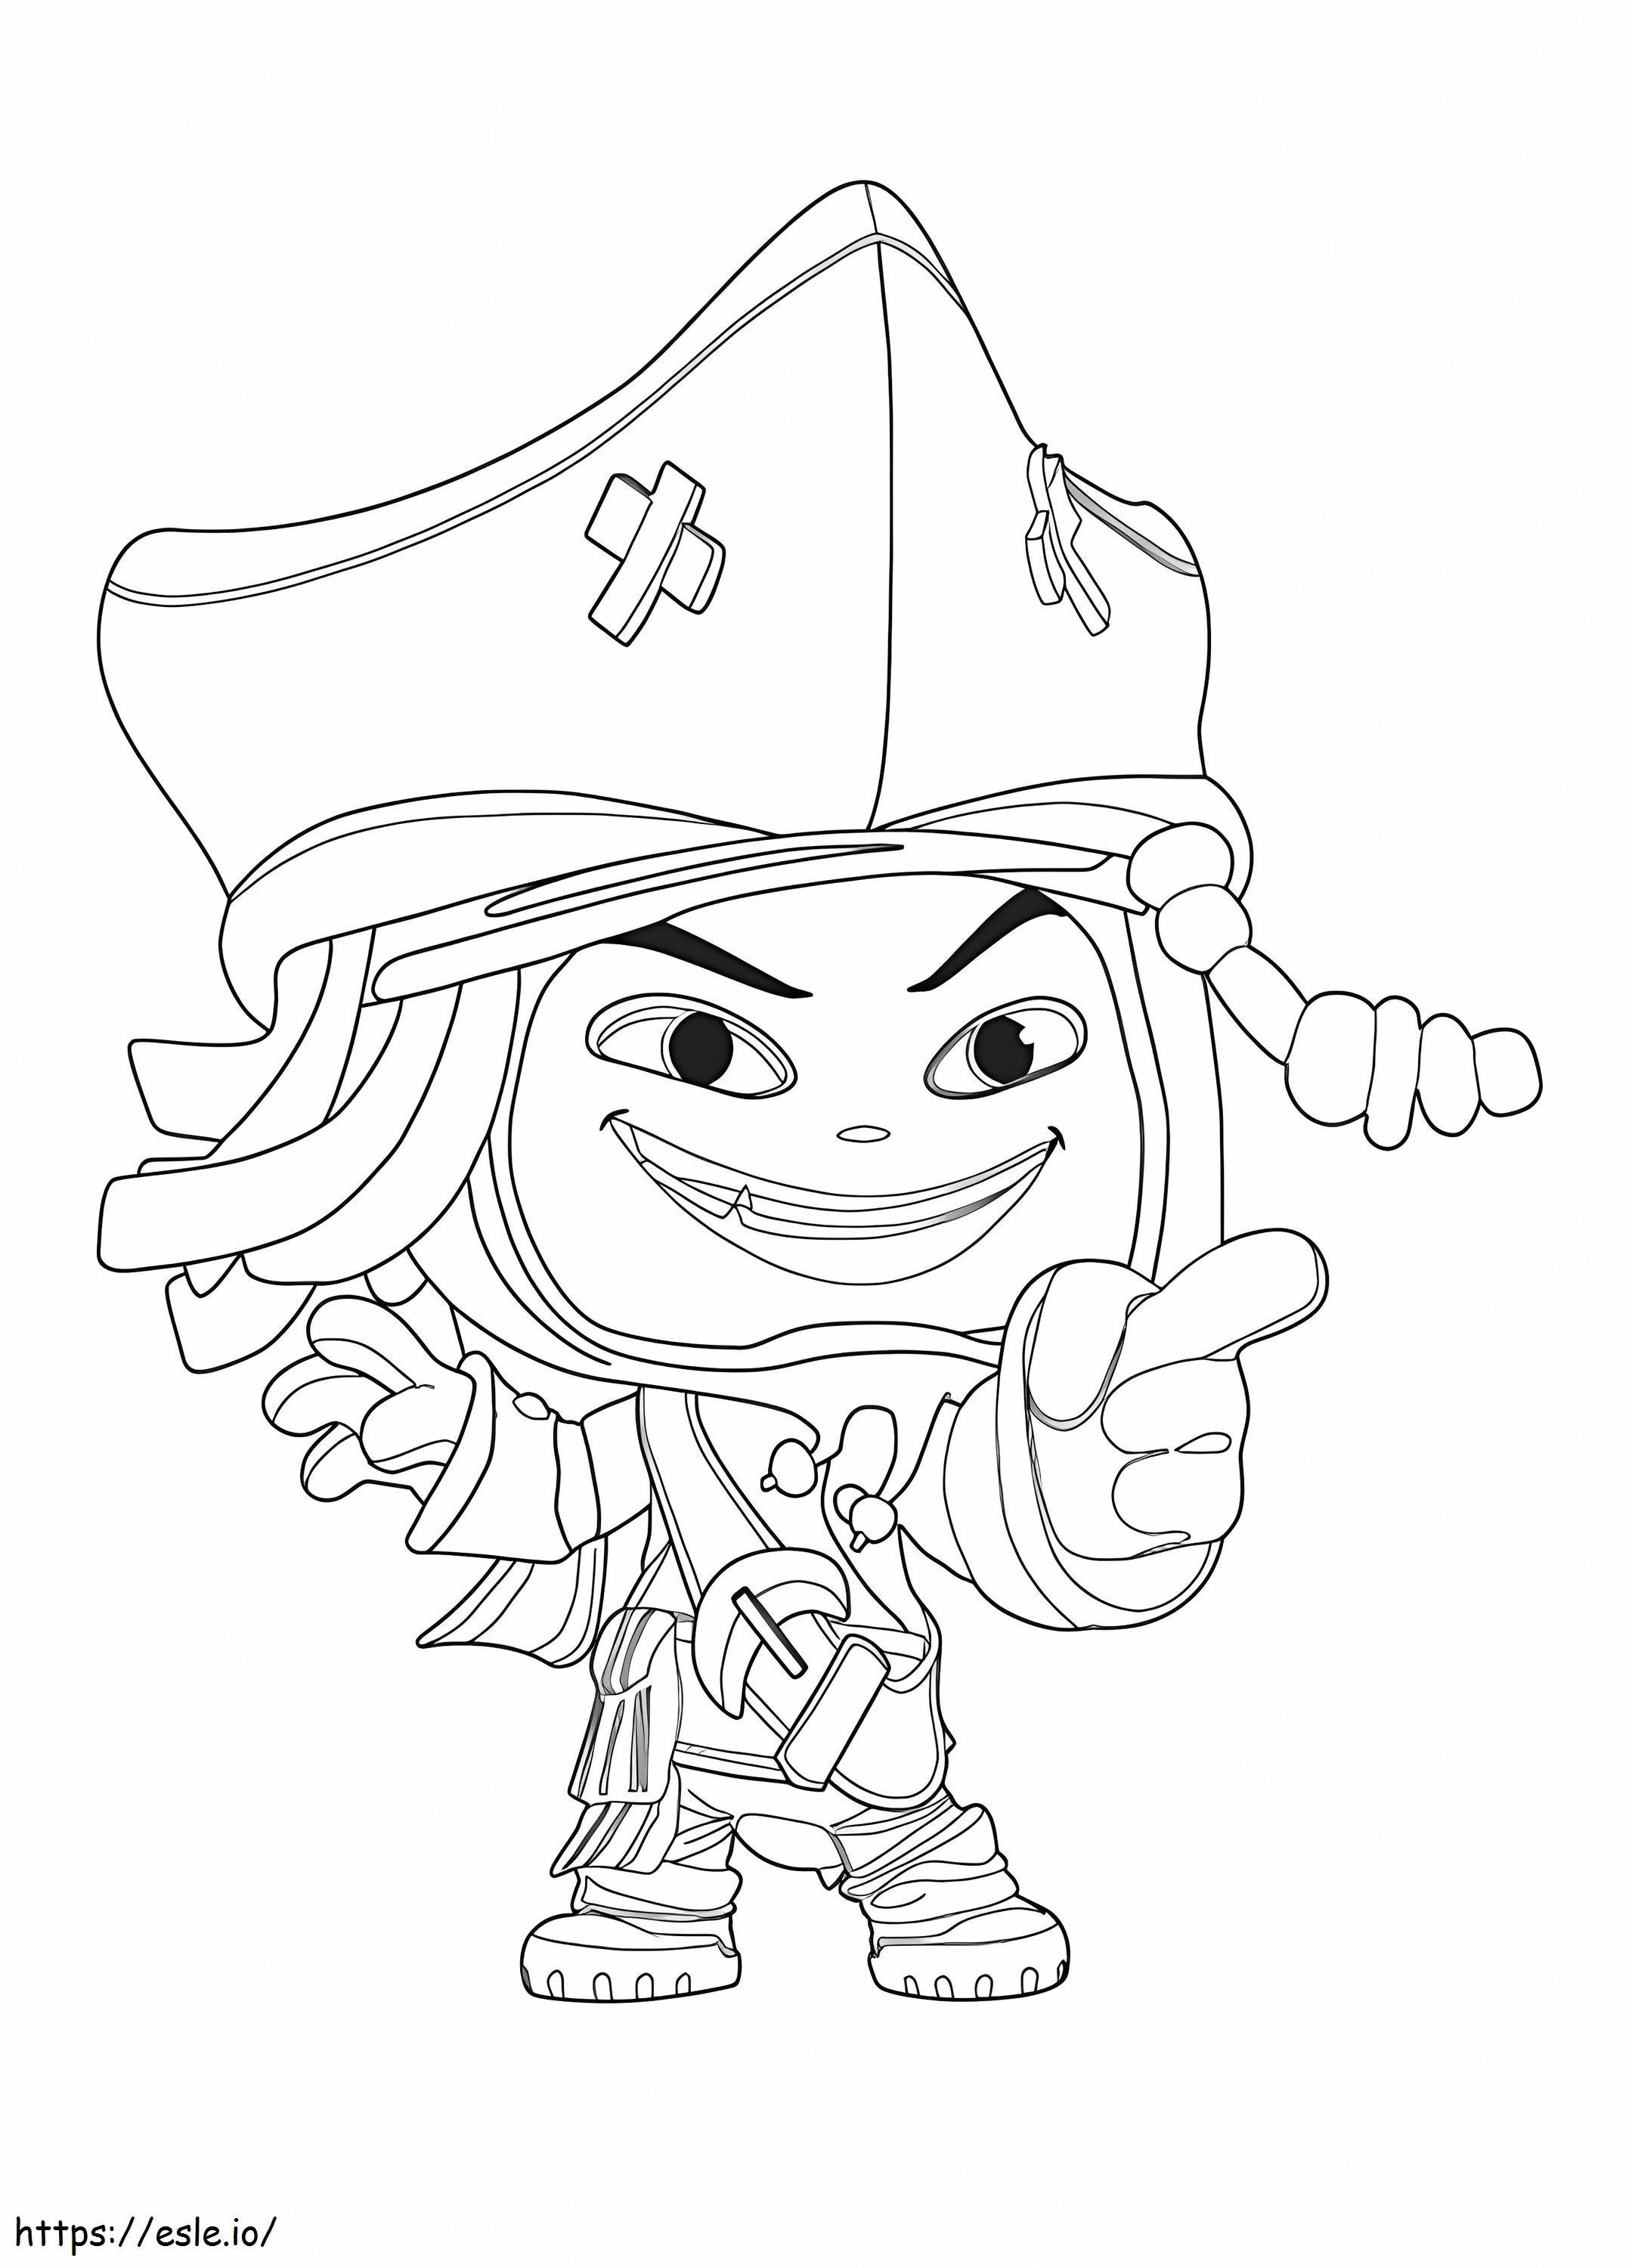 Jack Sparrow del Universo Disney para colorear